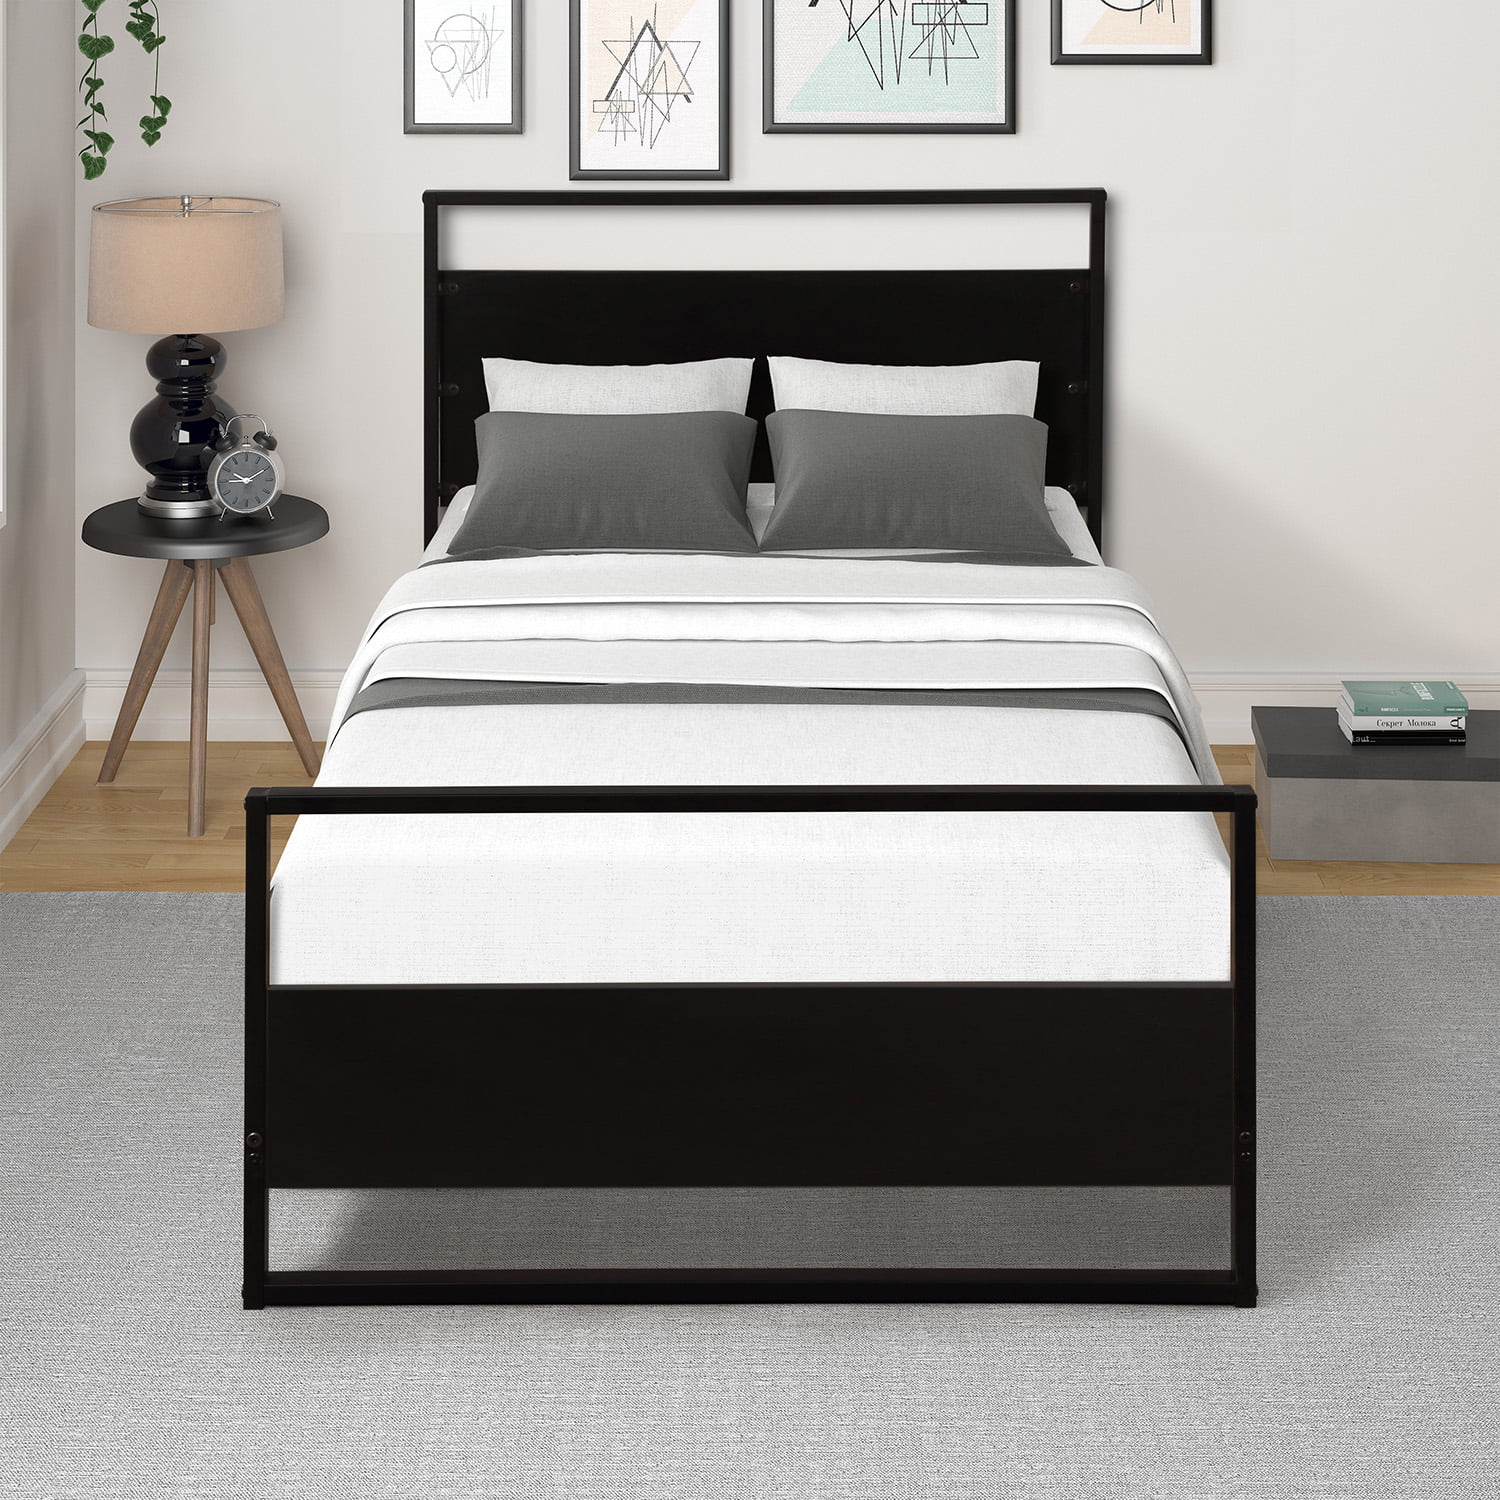 Twin Metal Bed Frame Black, Modern Steel Bed Frame